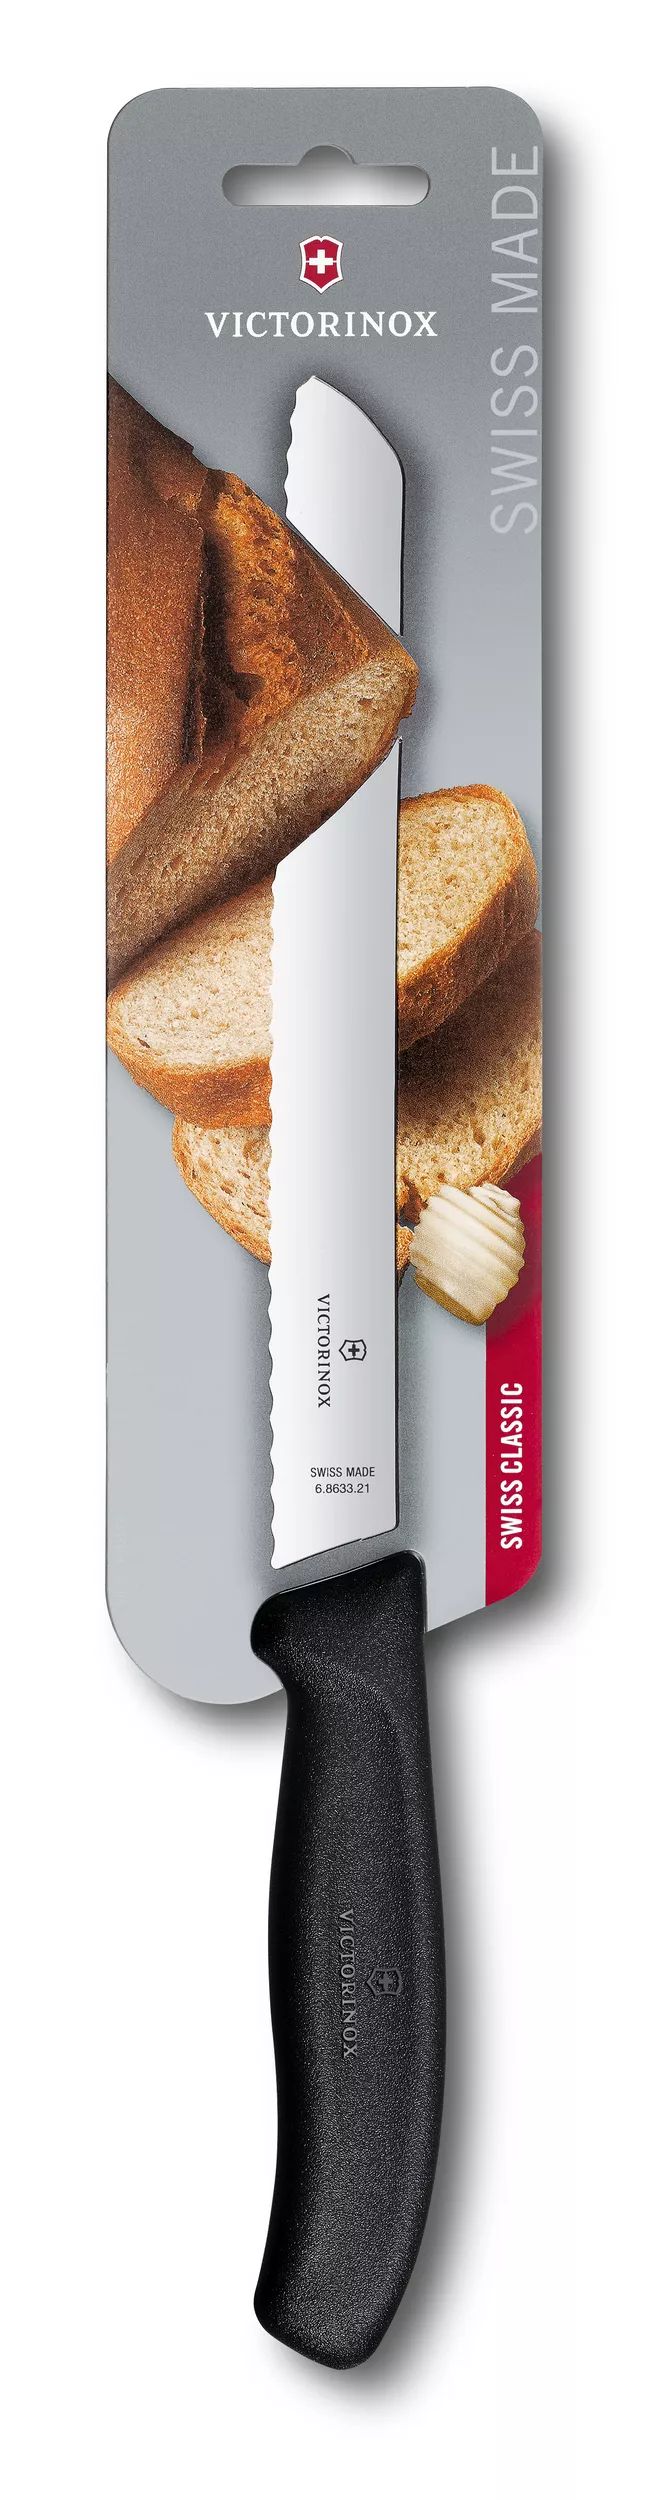 Swiss Classic Bread Knife - 6.8633.21B